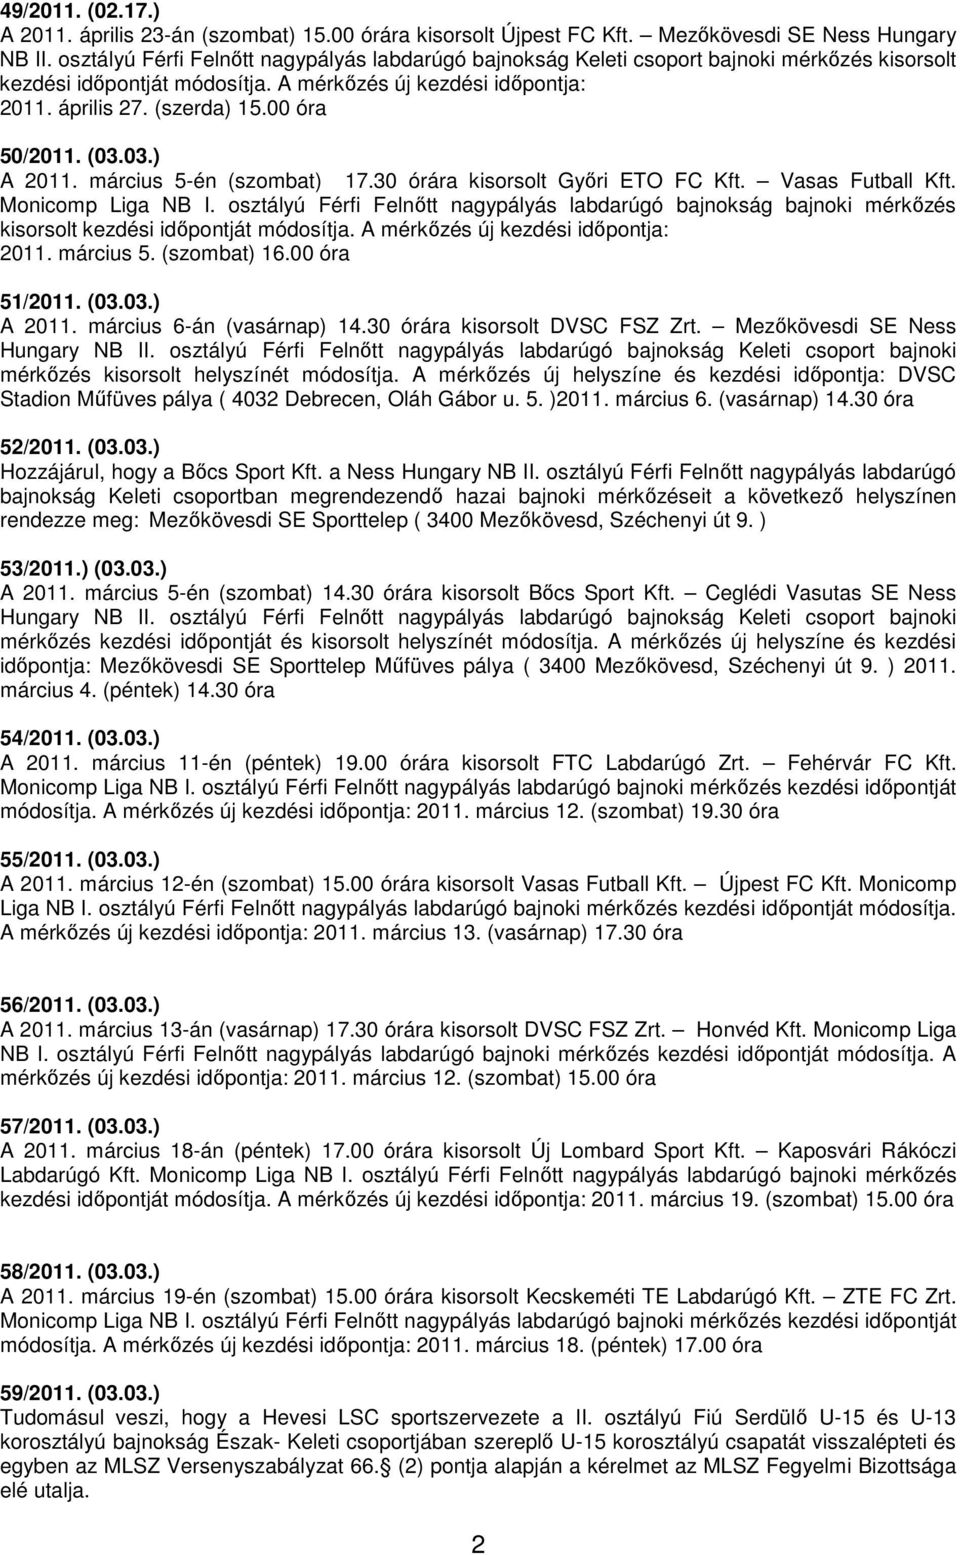 00 óra 50/2011. (03.03.) A 2011. március 5-én (szombat) 17.30 órára kisorsolt Győri ETO FC Kft. Vasas Futball Kft. Monicomp Liga NB I.